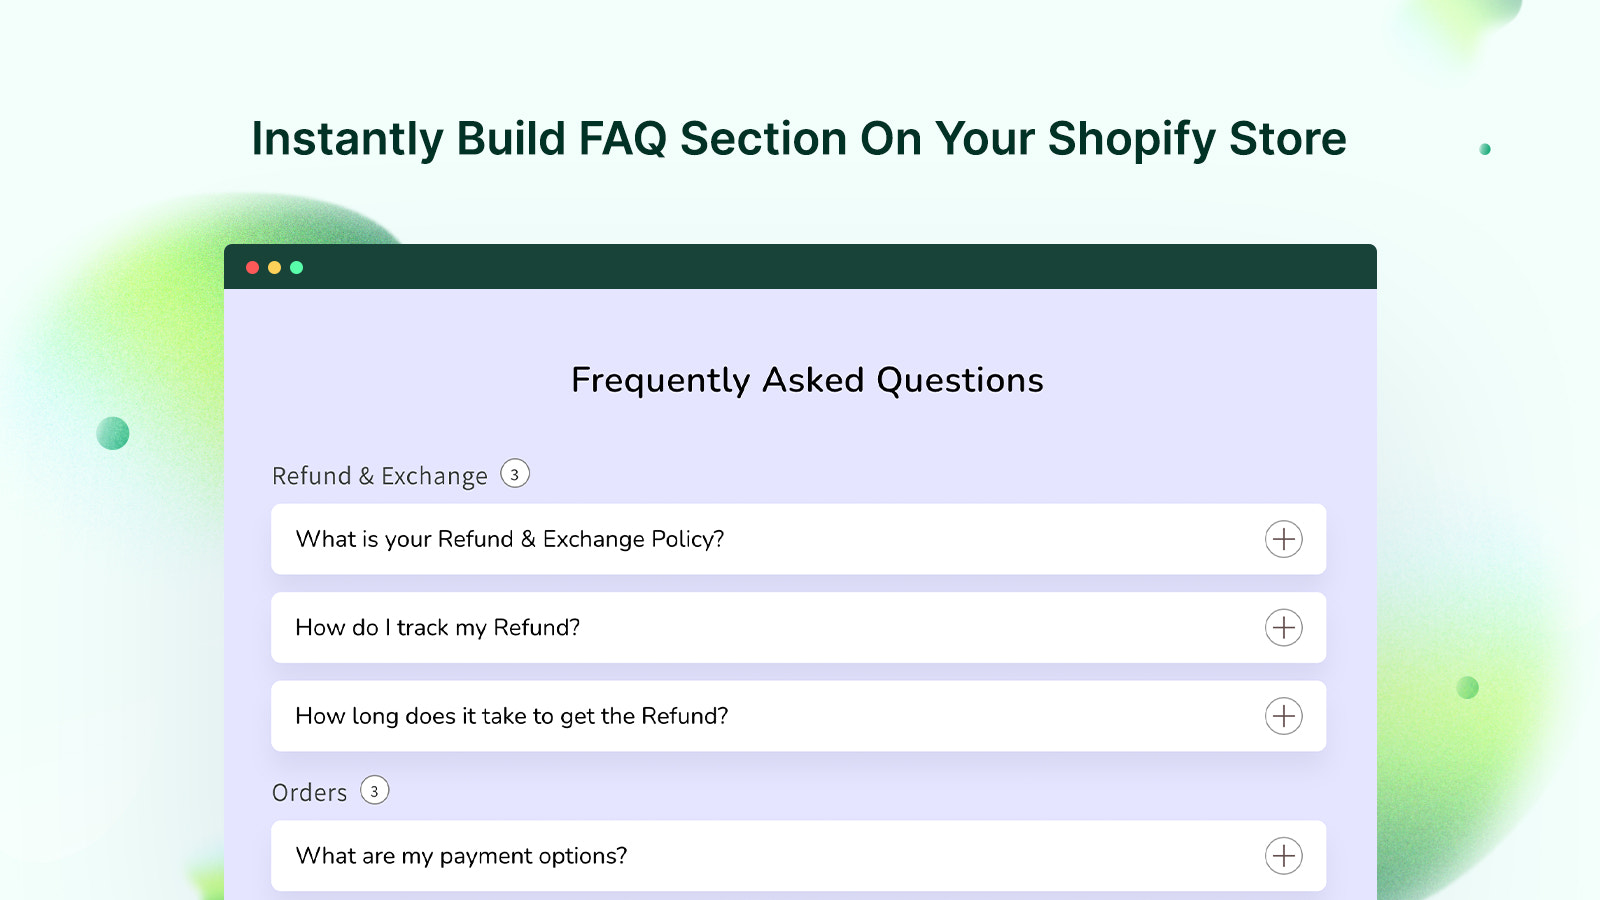 Bouw direct een FAQ-sectie op uw Shopify-winkel